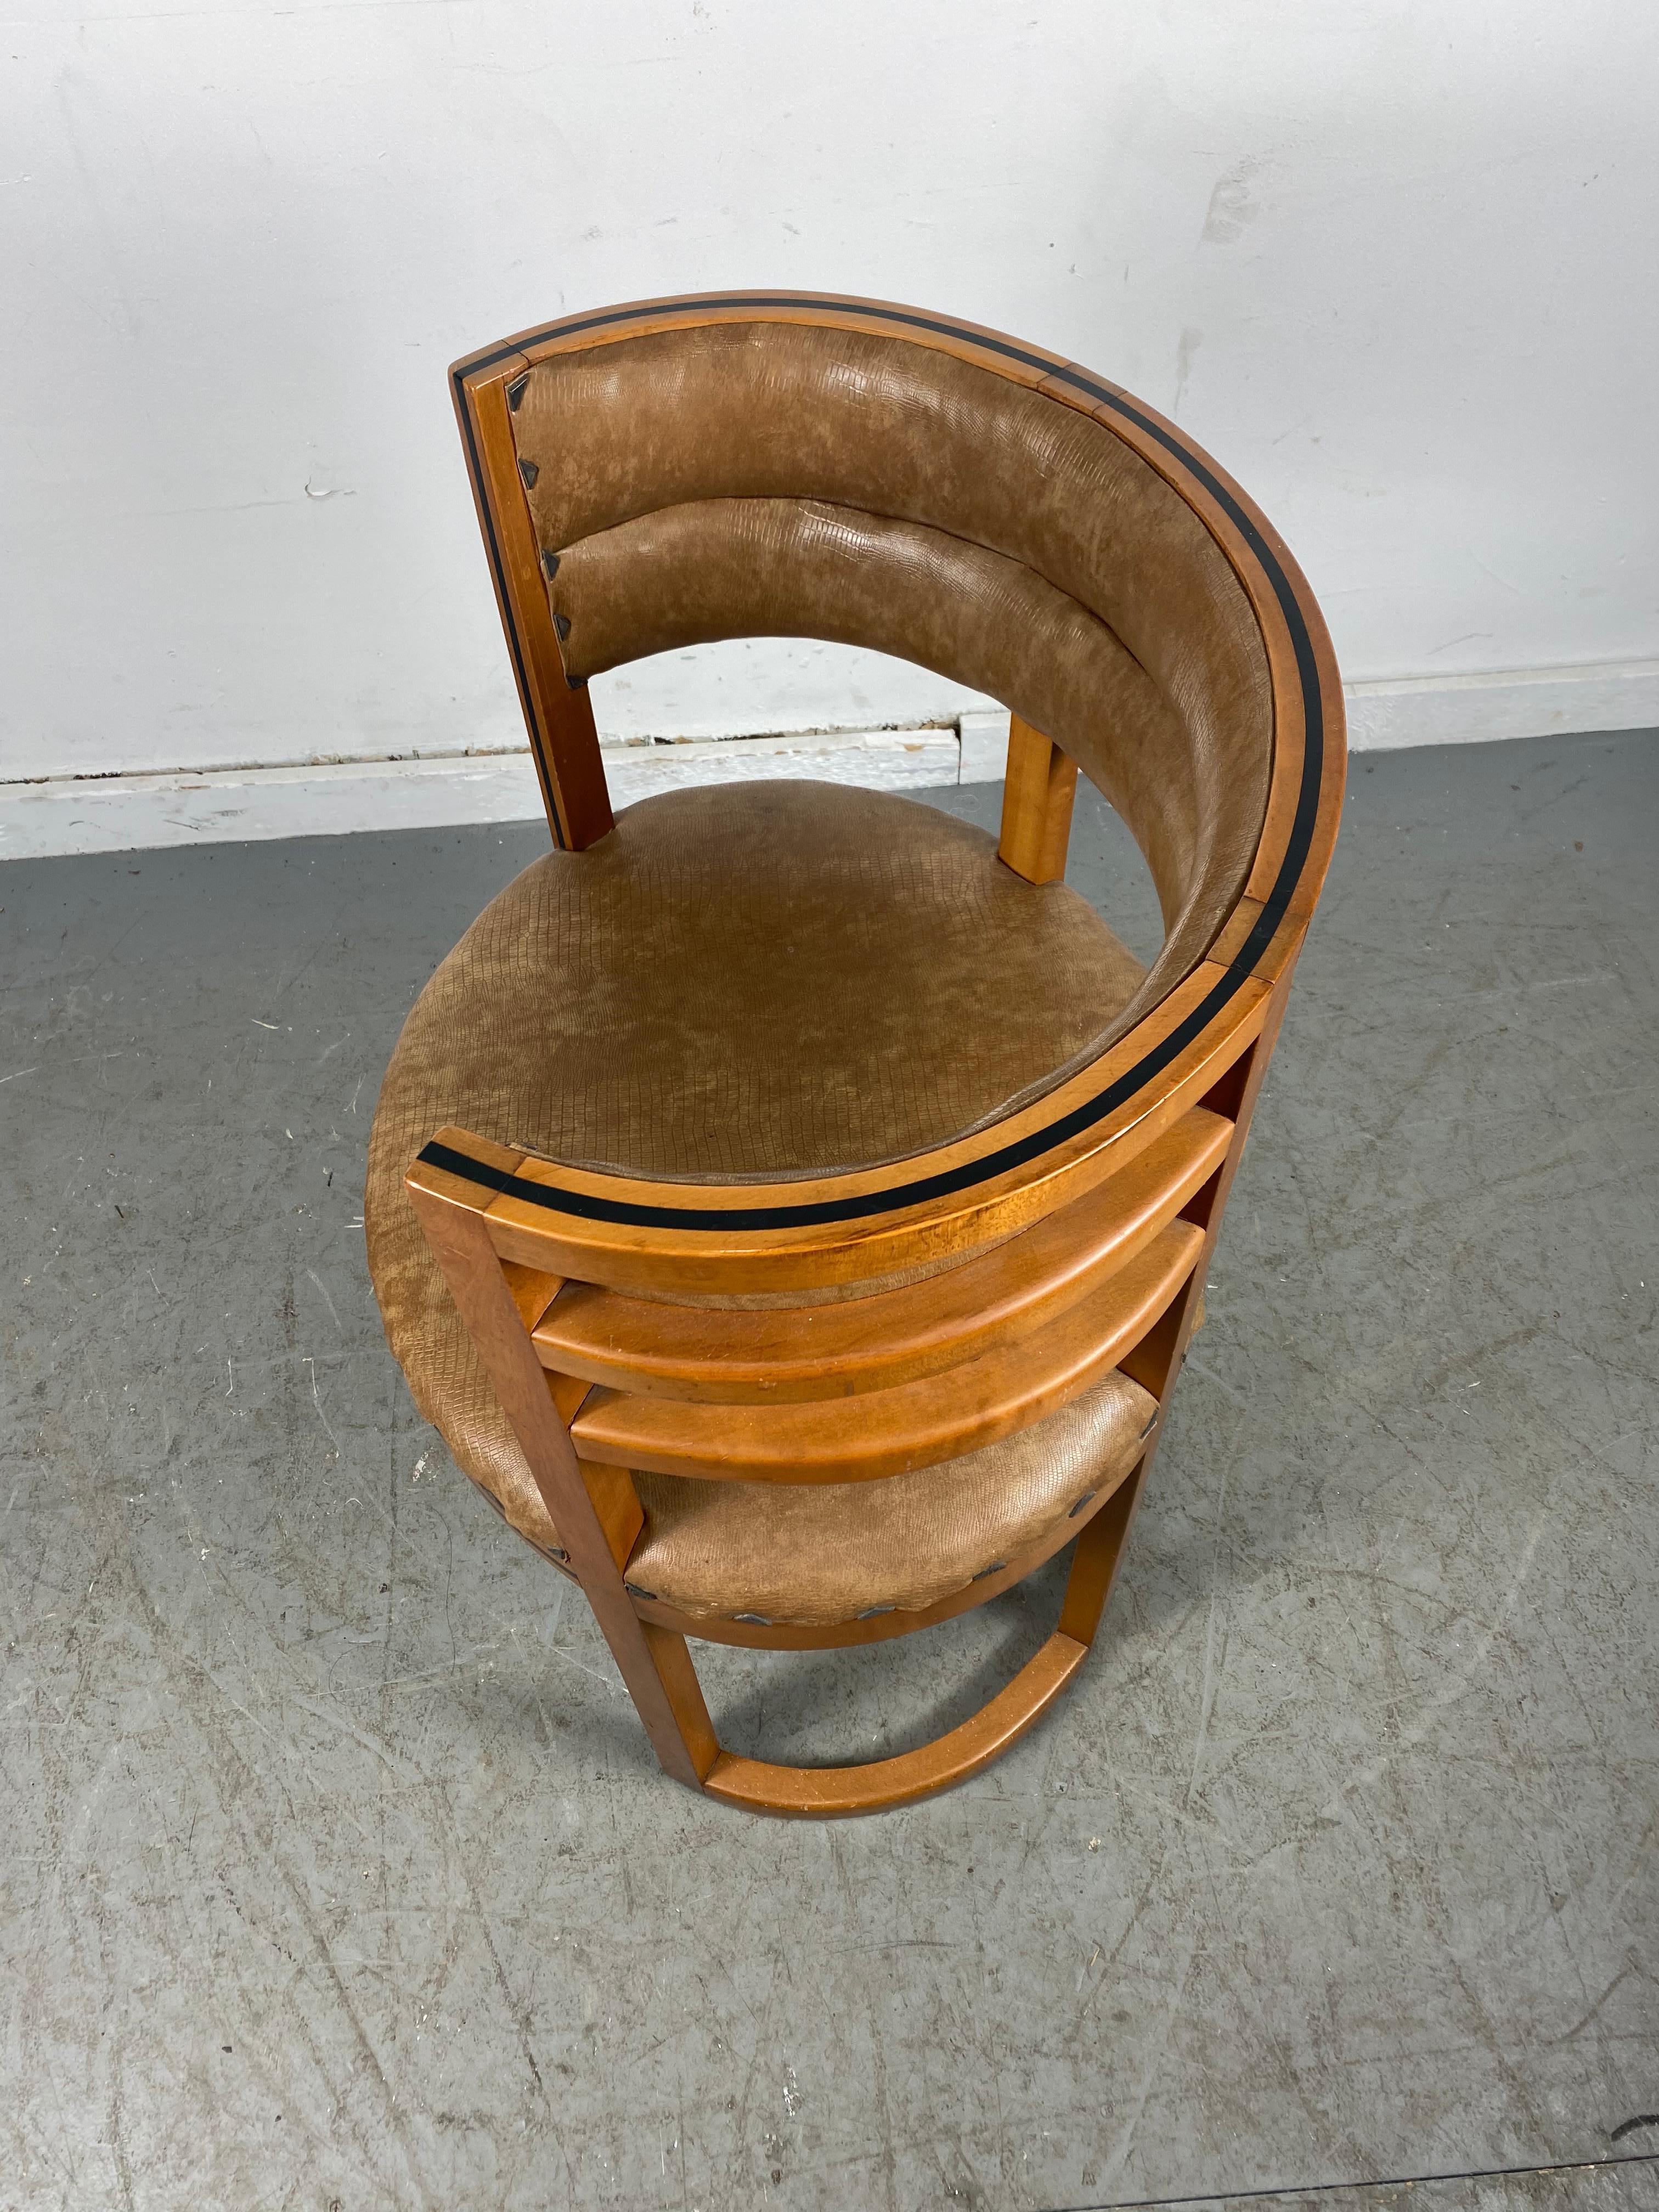 Naugahyde Unusual Art Deco, Bauhaus Accent / Desk Barrel Chair Manner of Josef Hoffmann